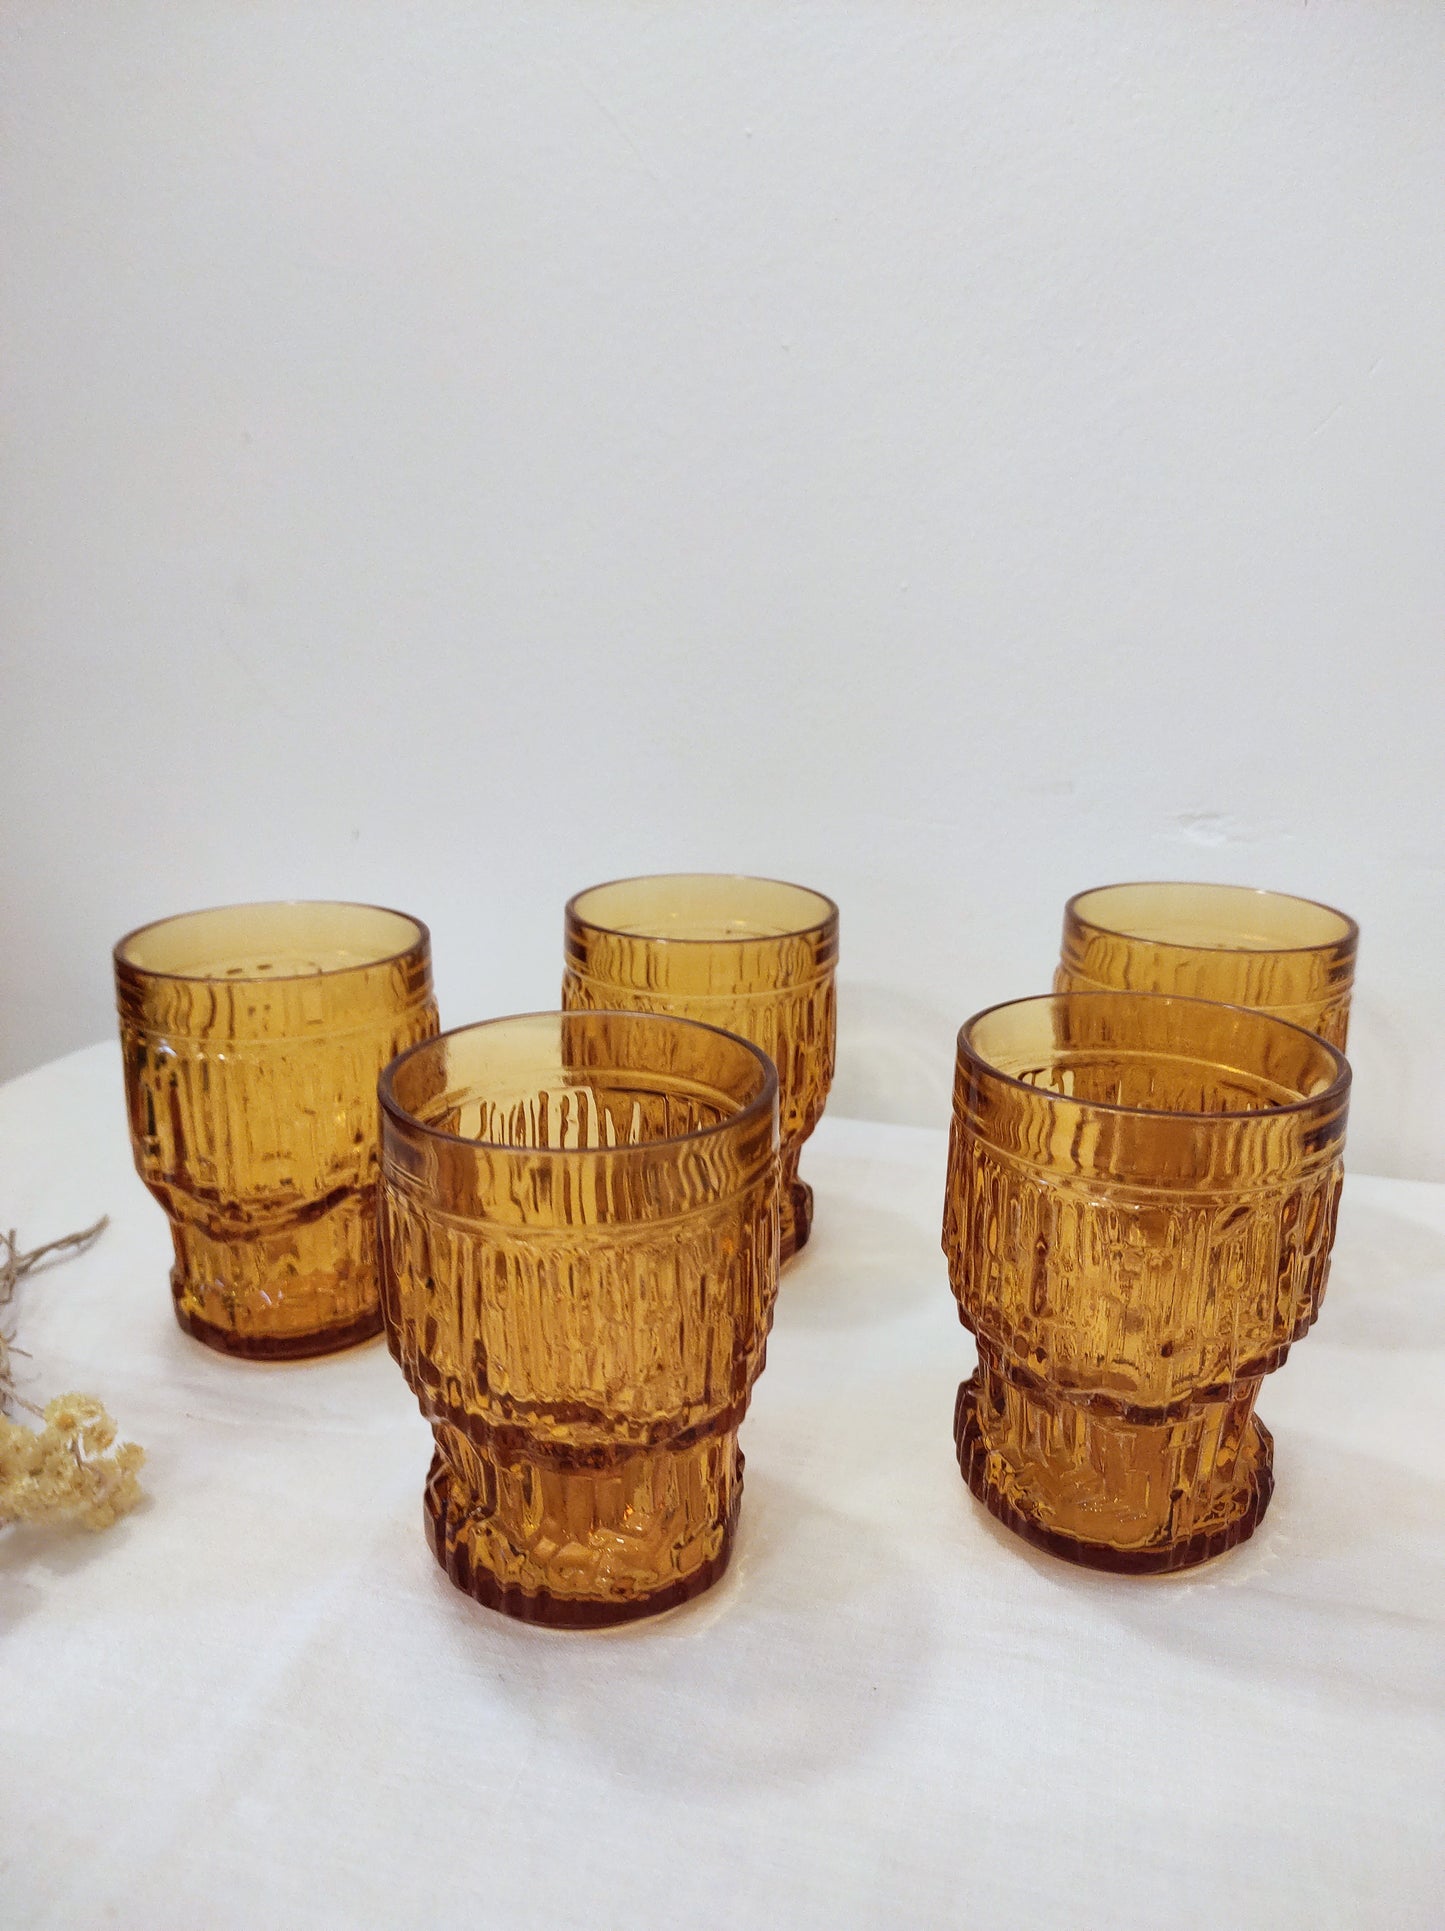 Set de 5 verres ambrés années 70 par Bormioli. Ensemble de 5 verres moulés ambrés de fabrication italienne par Bormioli des années 70. Verres vintage